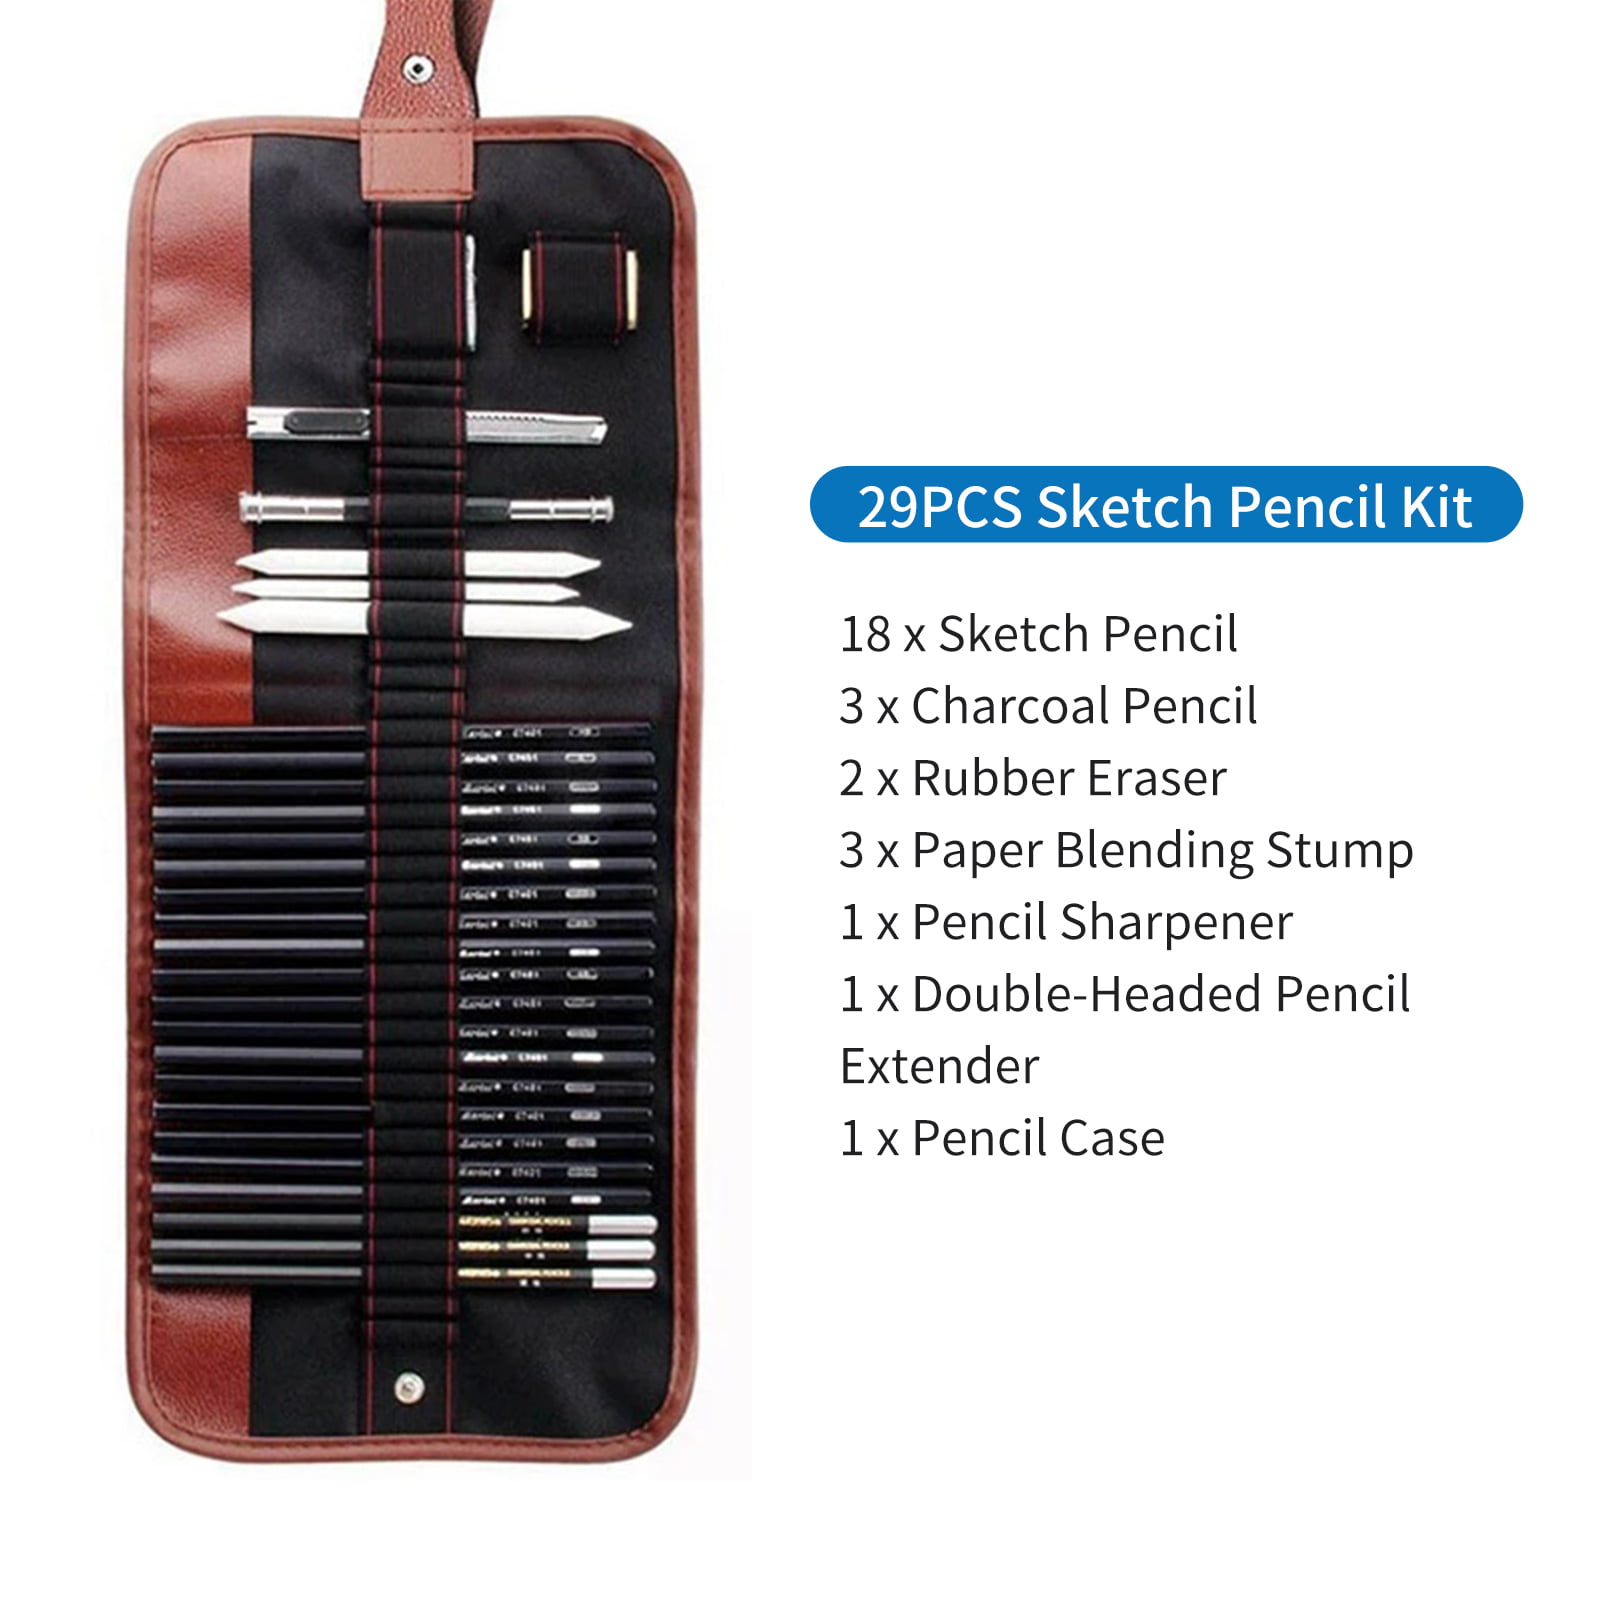 36pcs Sketching Set Adult Art Painting Charcoal Pencil Zipper Bag